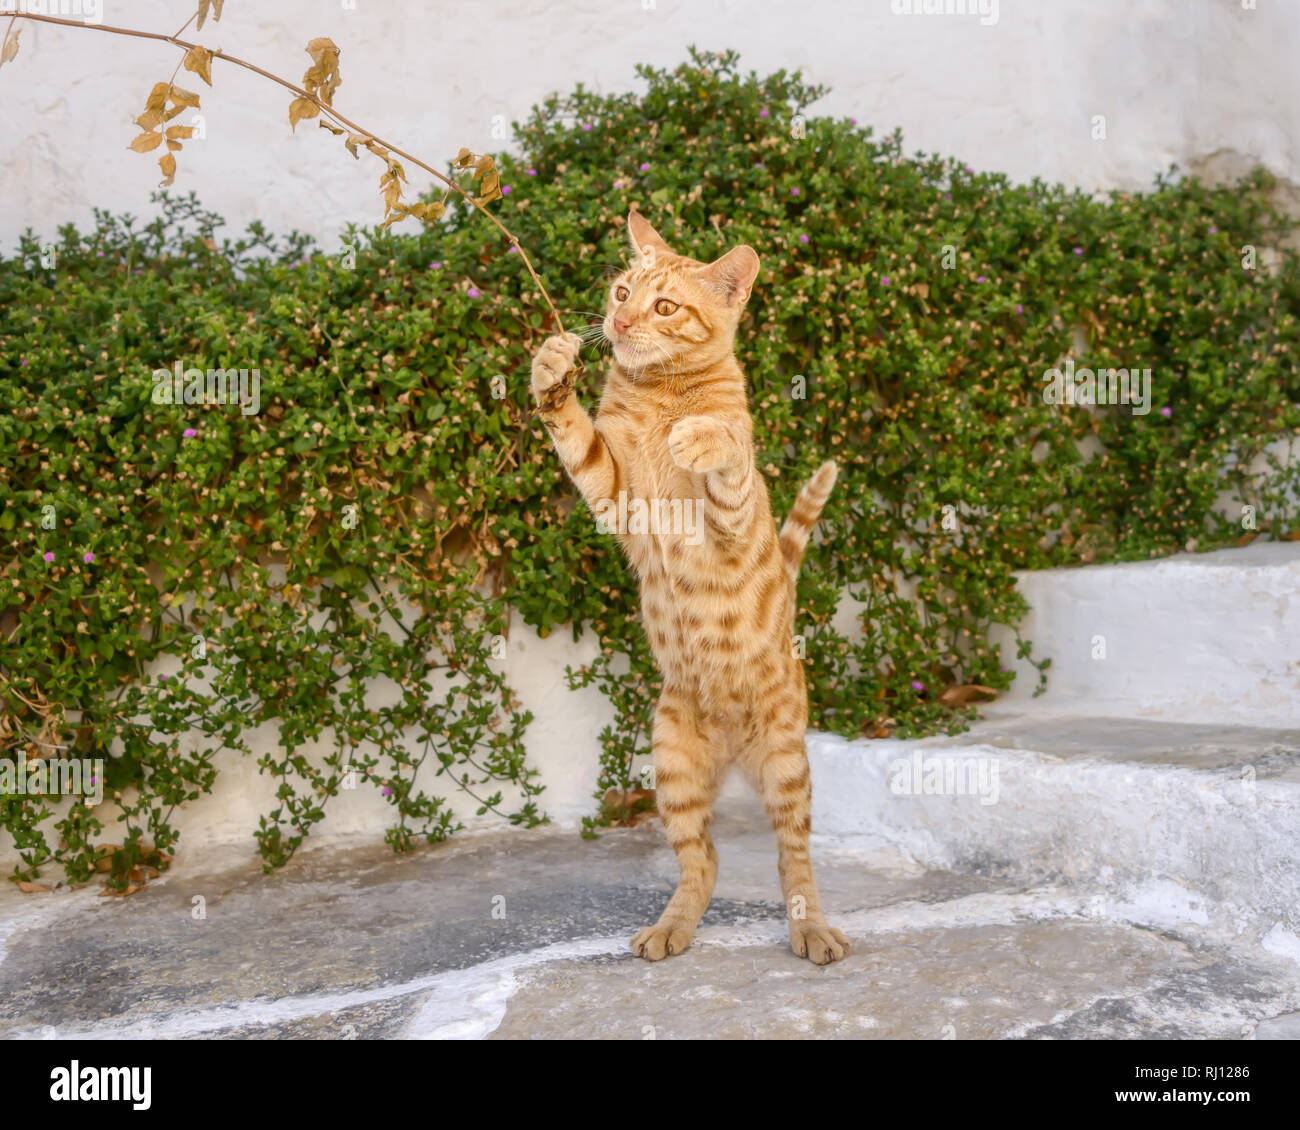 Funny gattino, orange tabby a pelo corto, giocando con un ramoscello, in piedi sulle zampe posteriori, isola del Mar Egeo, Grecia Foto Stock